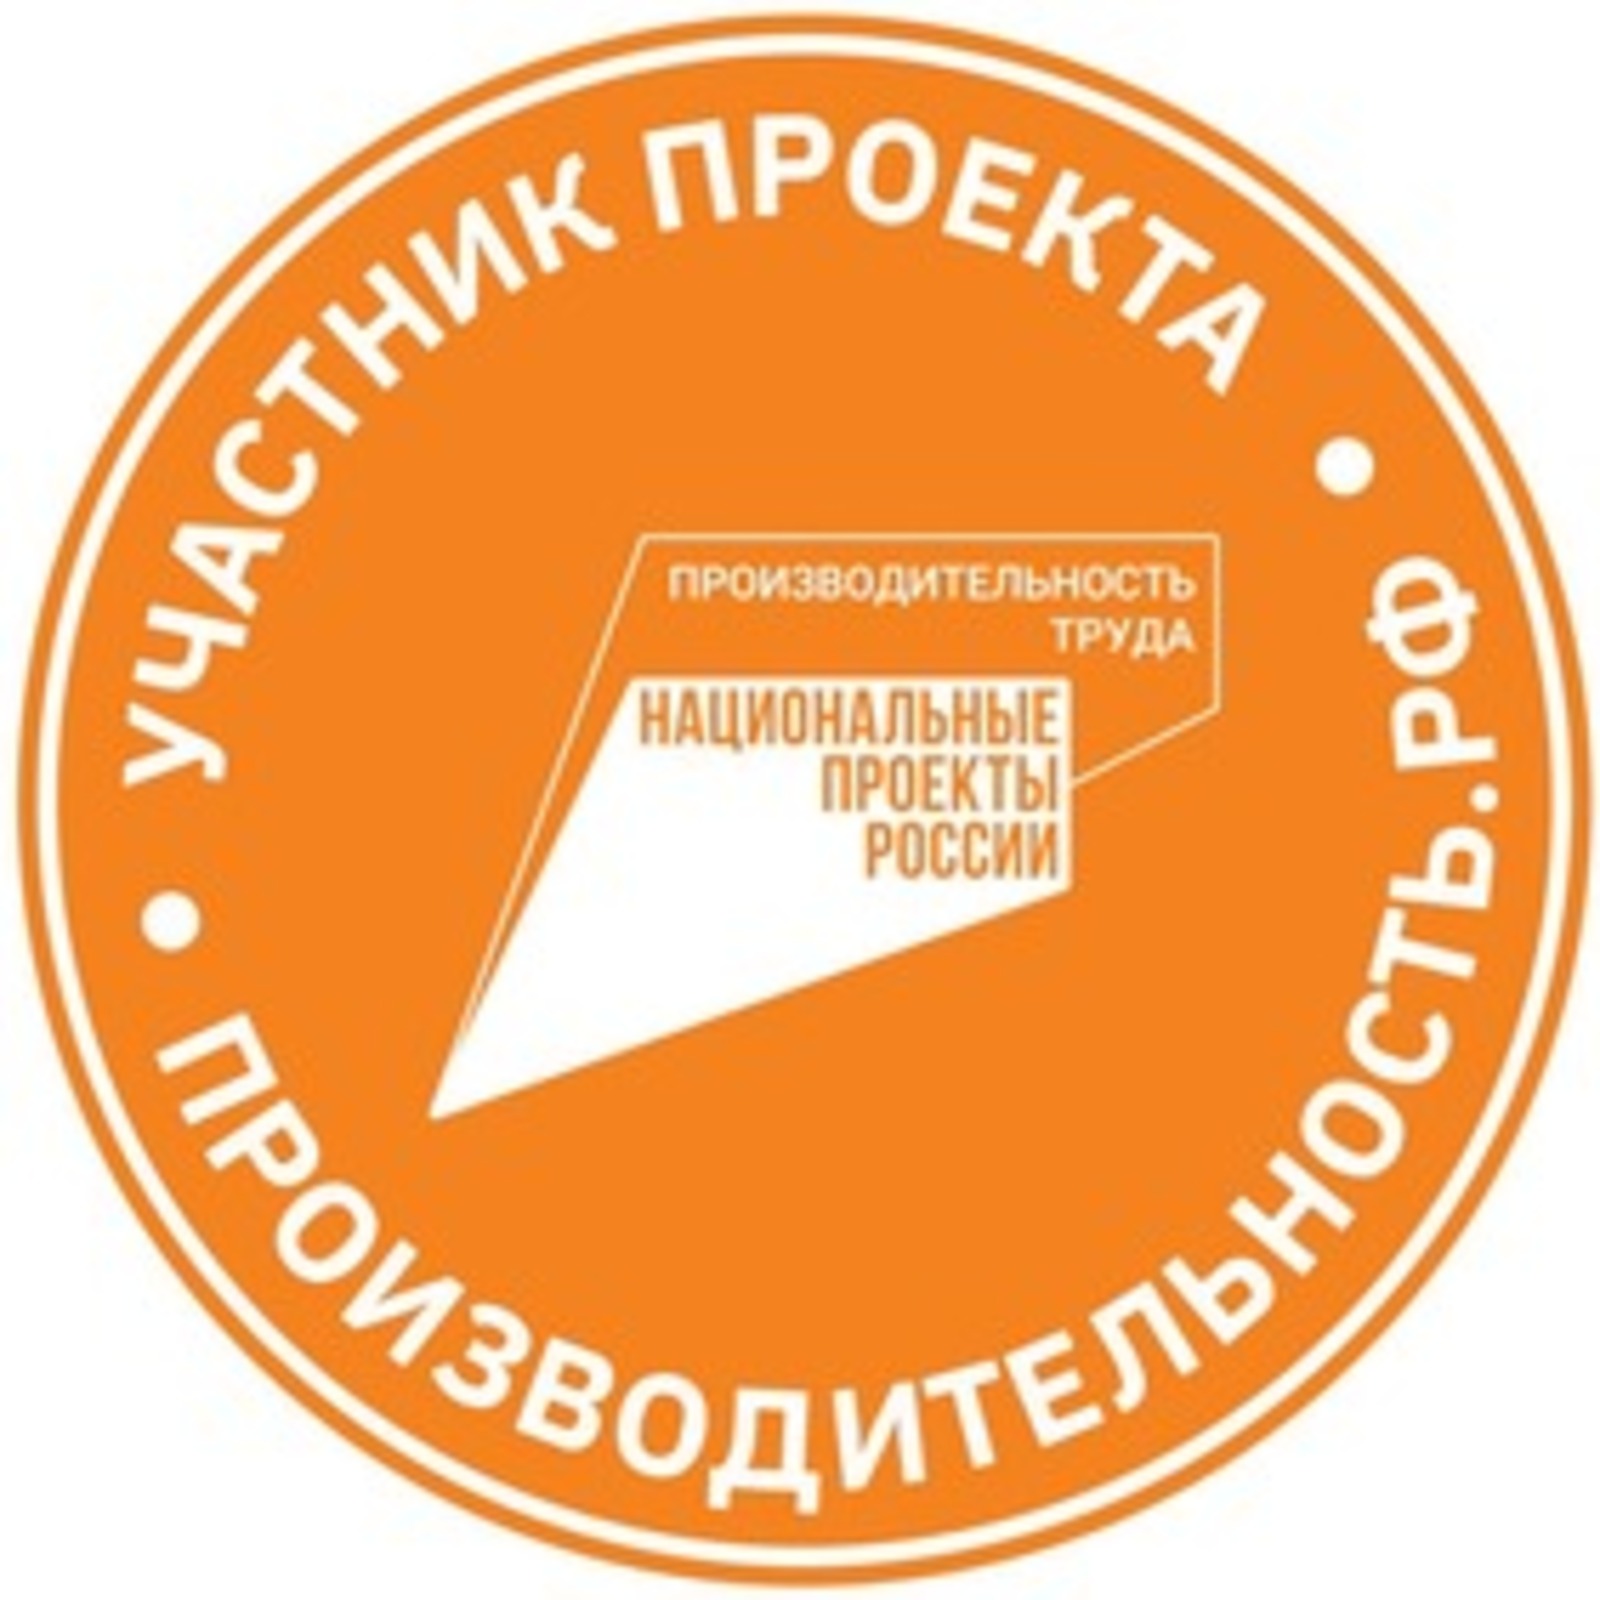 В Башкортостане компания из сферы системной интеграции присоединилась к нацпроекту «Производительность труда»